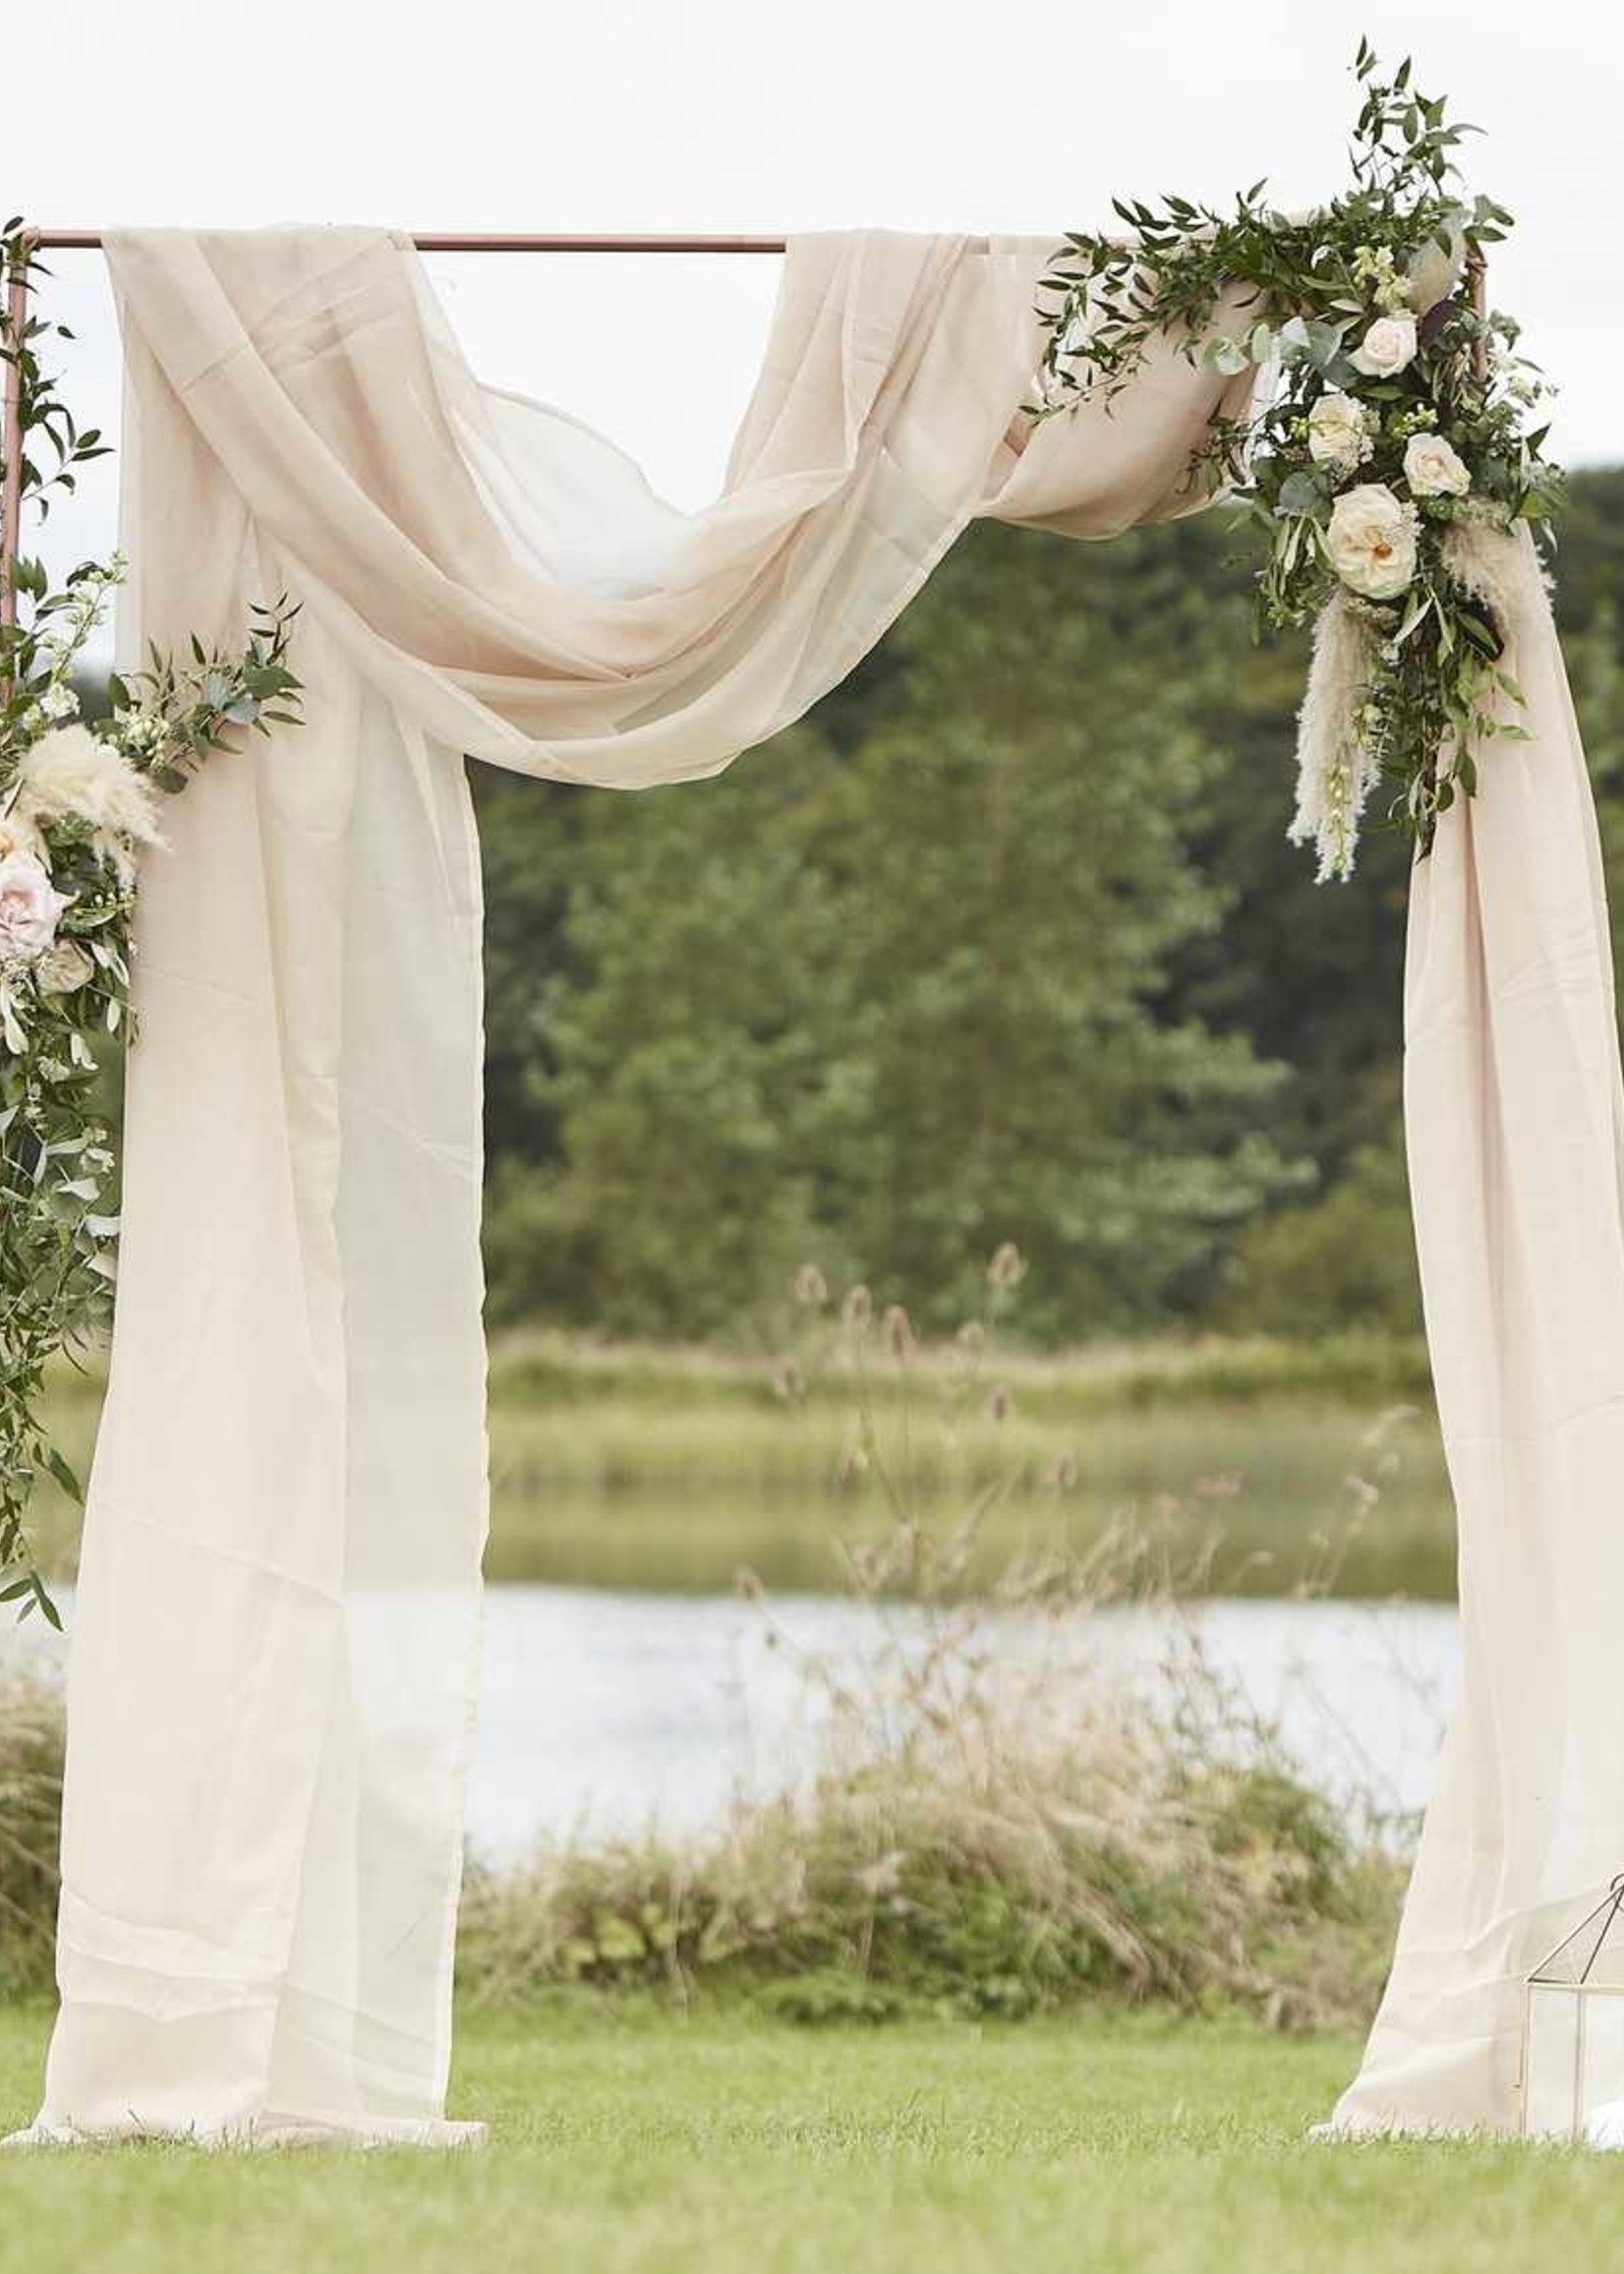 Hãy để vải phủ trang trí màn cưới màu taupe kích thước 2.5m x 6m tạo nên không gian đầy xanh mát và tươi mới cho đám cưới của bạn. Đây là sự kết hợp hoàn hảo giữa màu trắng tinh khôi, màu neutrals và họa tiết đẹp mắt, giúp tạo nên không gian đáng nhớ cho đám cưới của bạn.